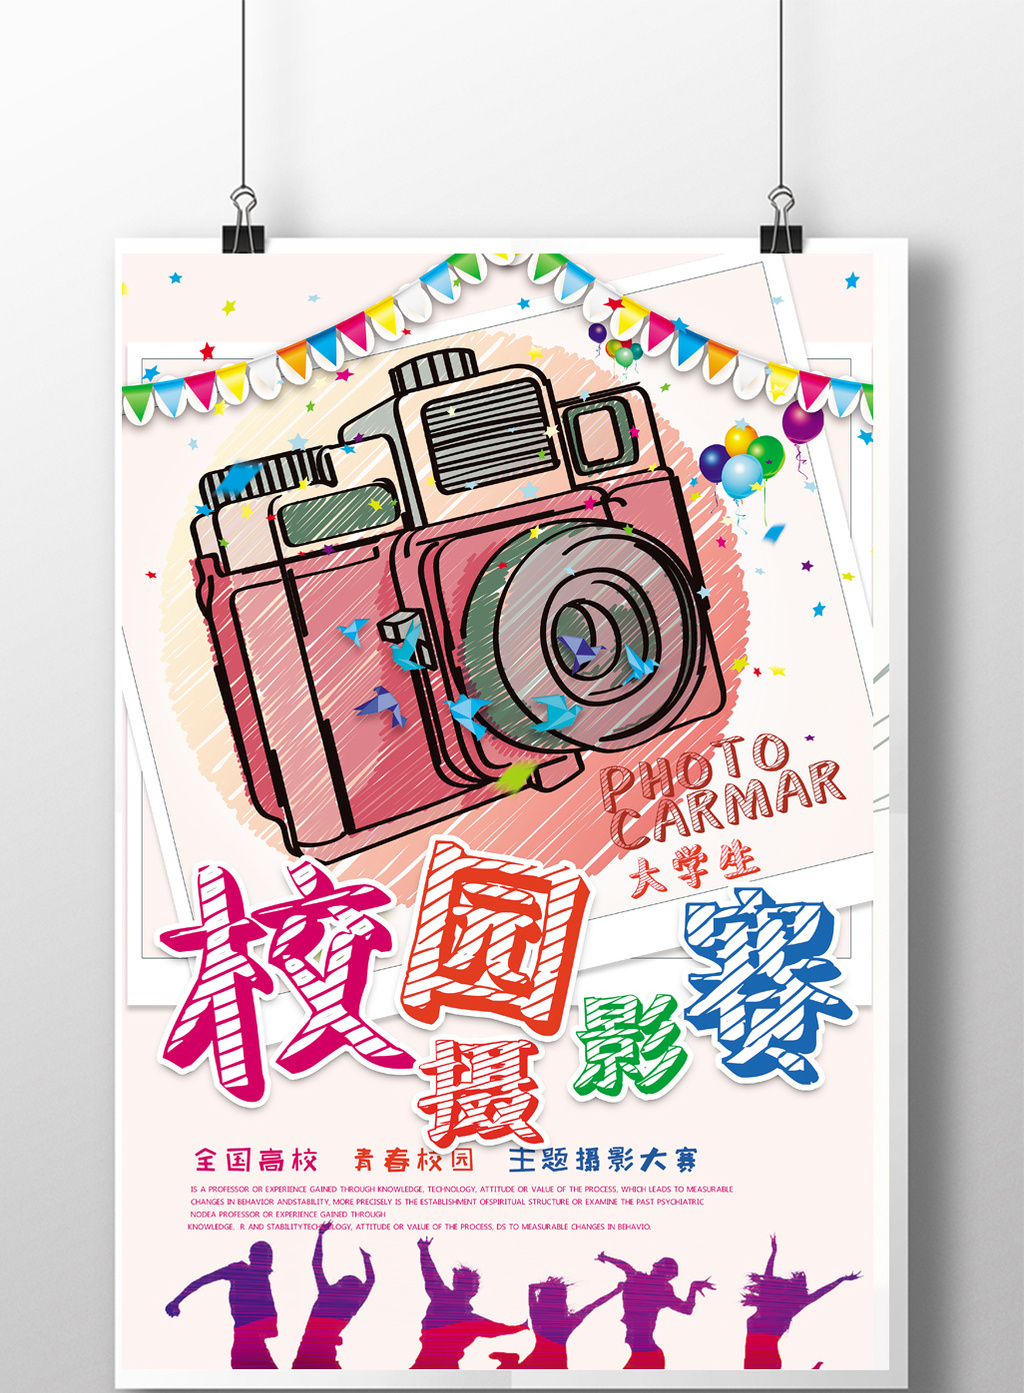 清新手绘校园摄影大赛宣传海报模板免费下载_图片设计